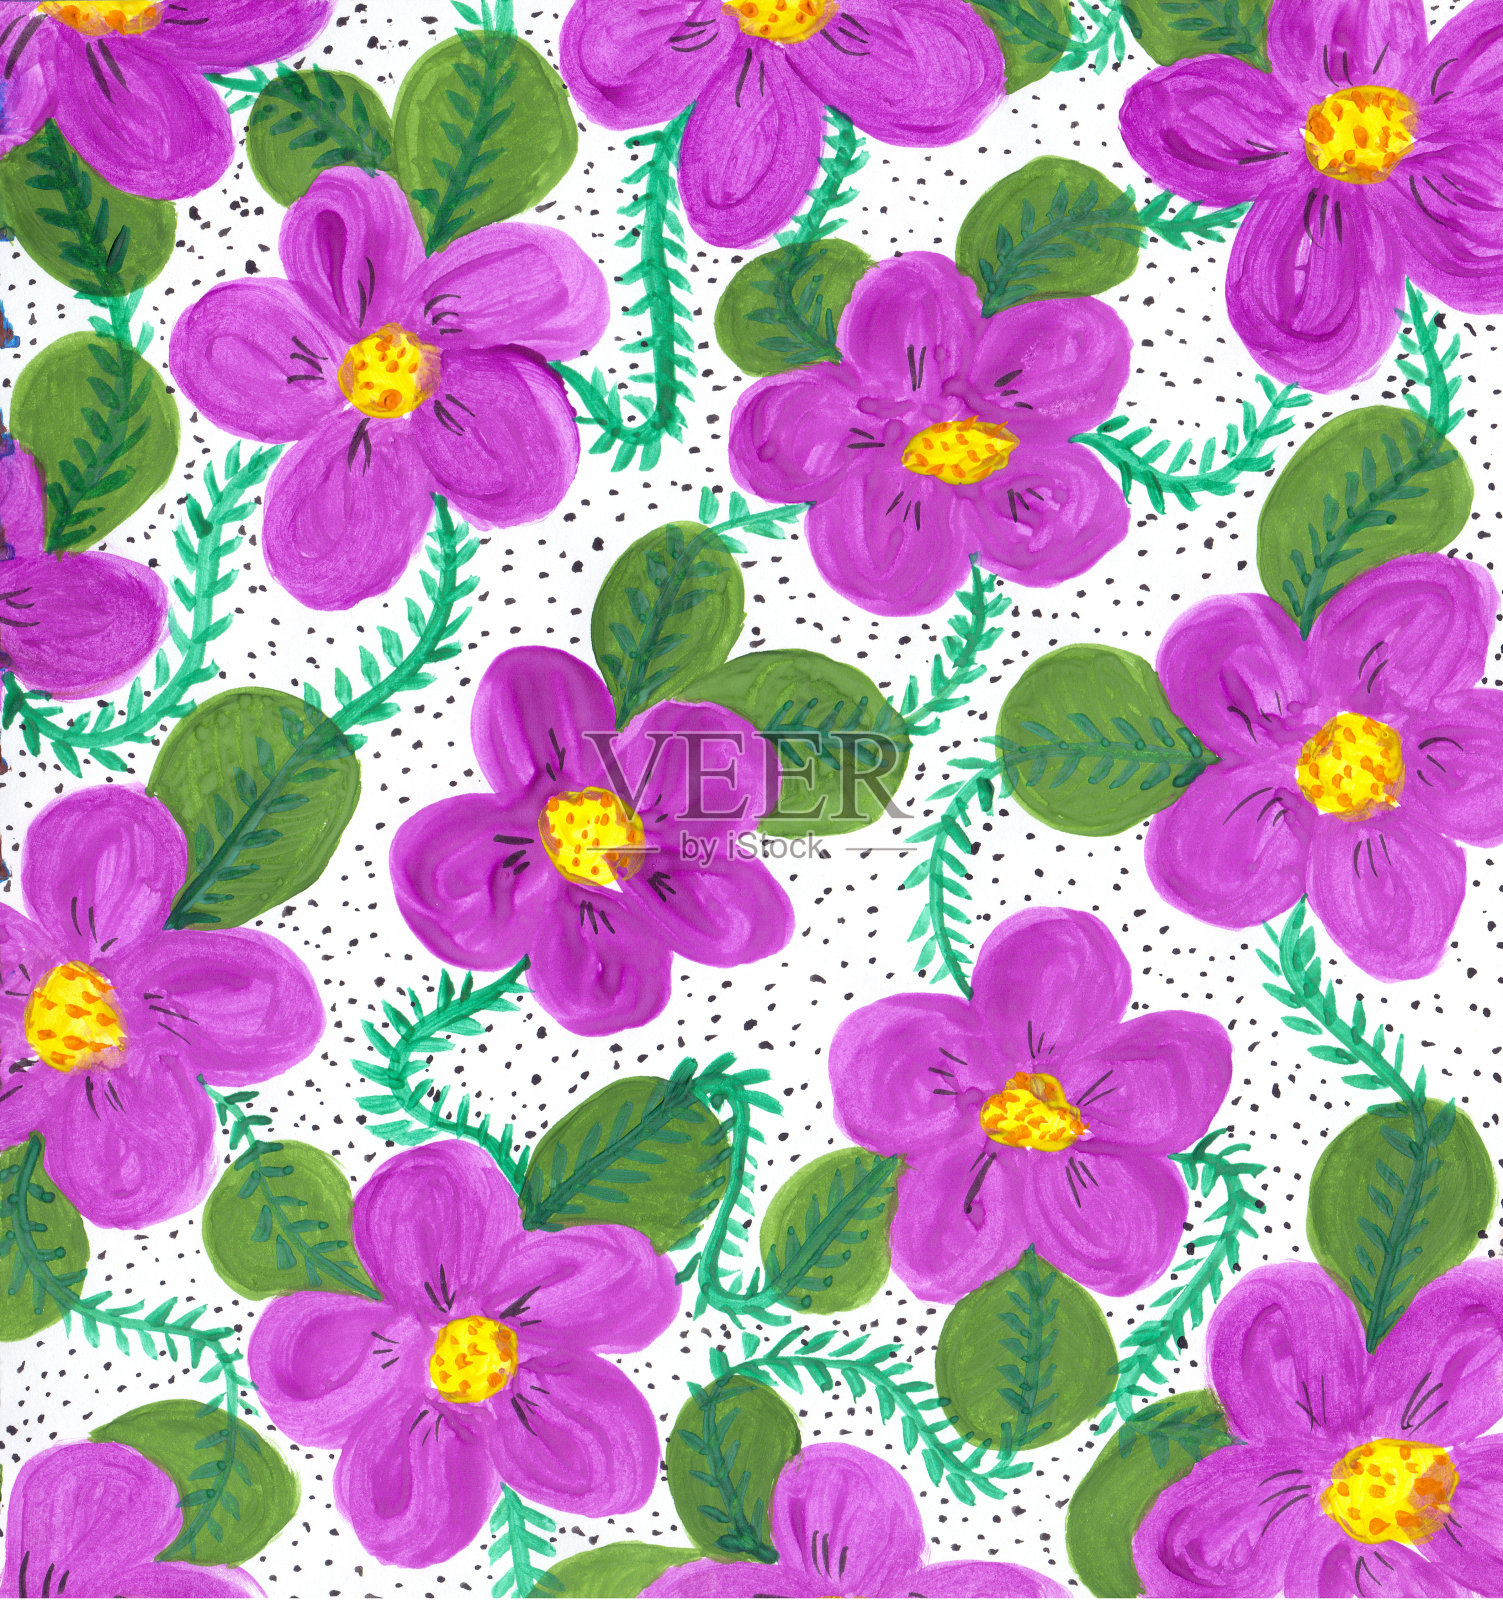 手绘天真的植物背景与温和的紫罗兰在白色斑驳的背景。插画图片素材